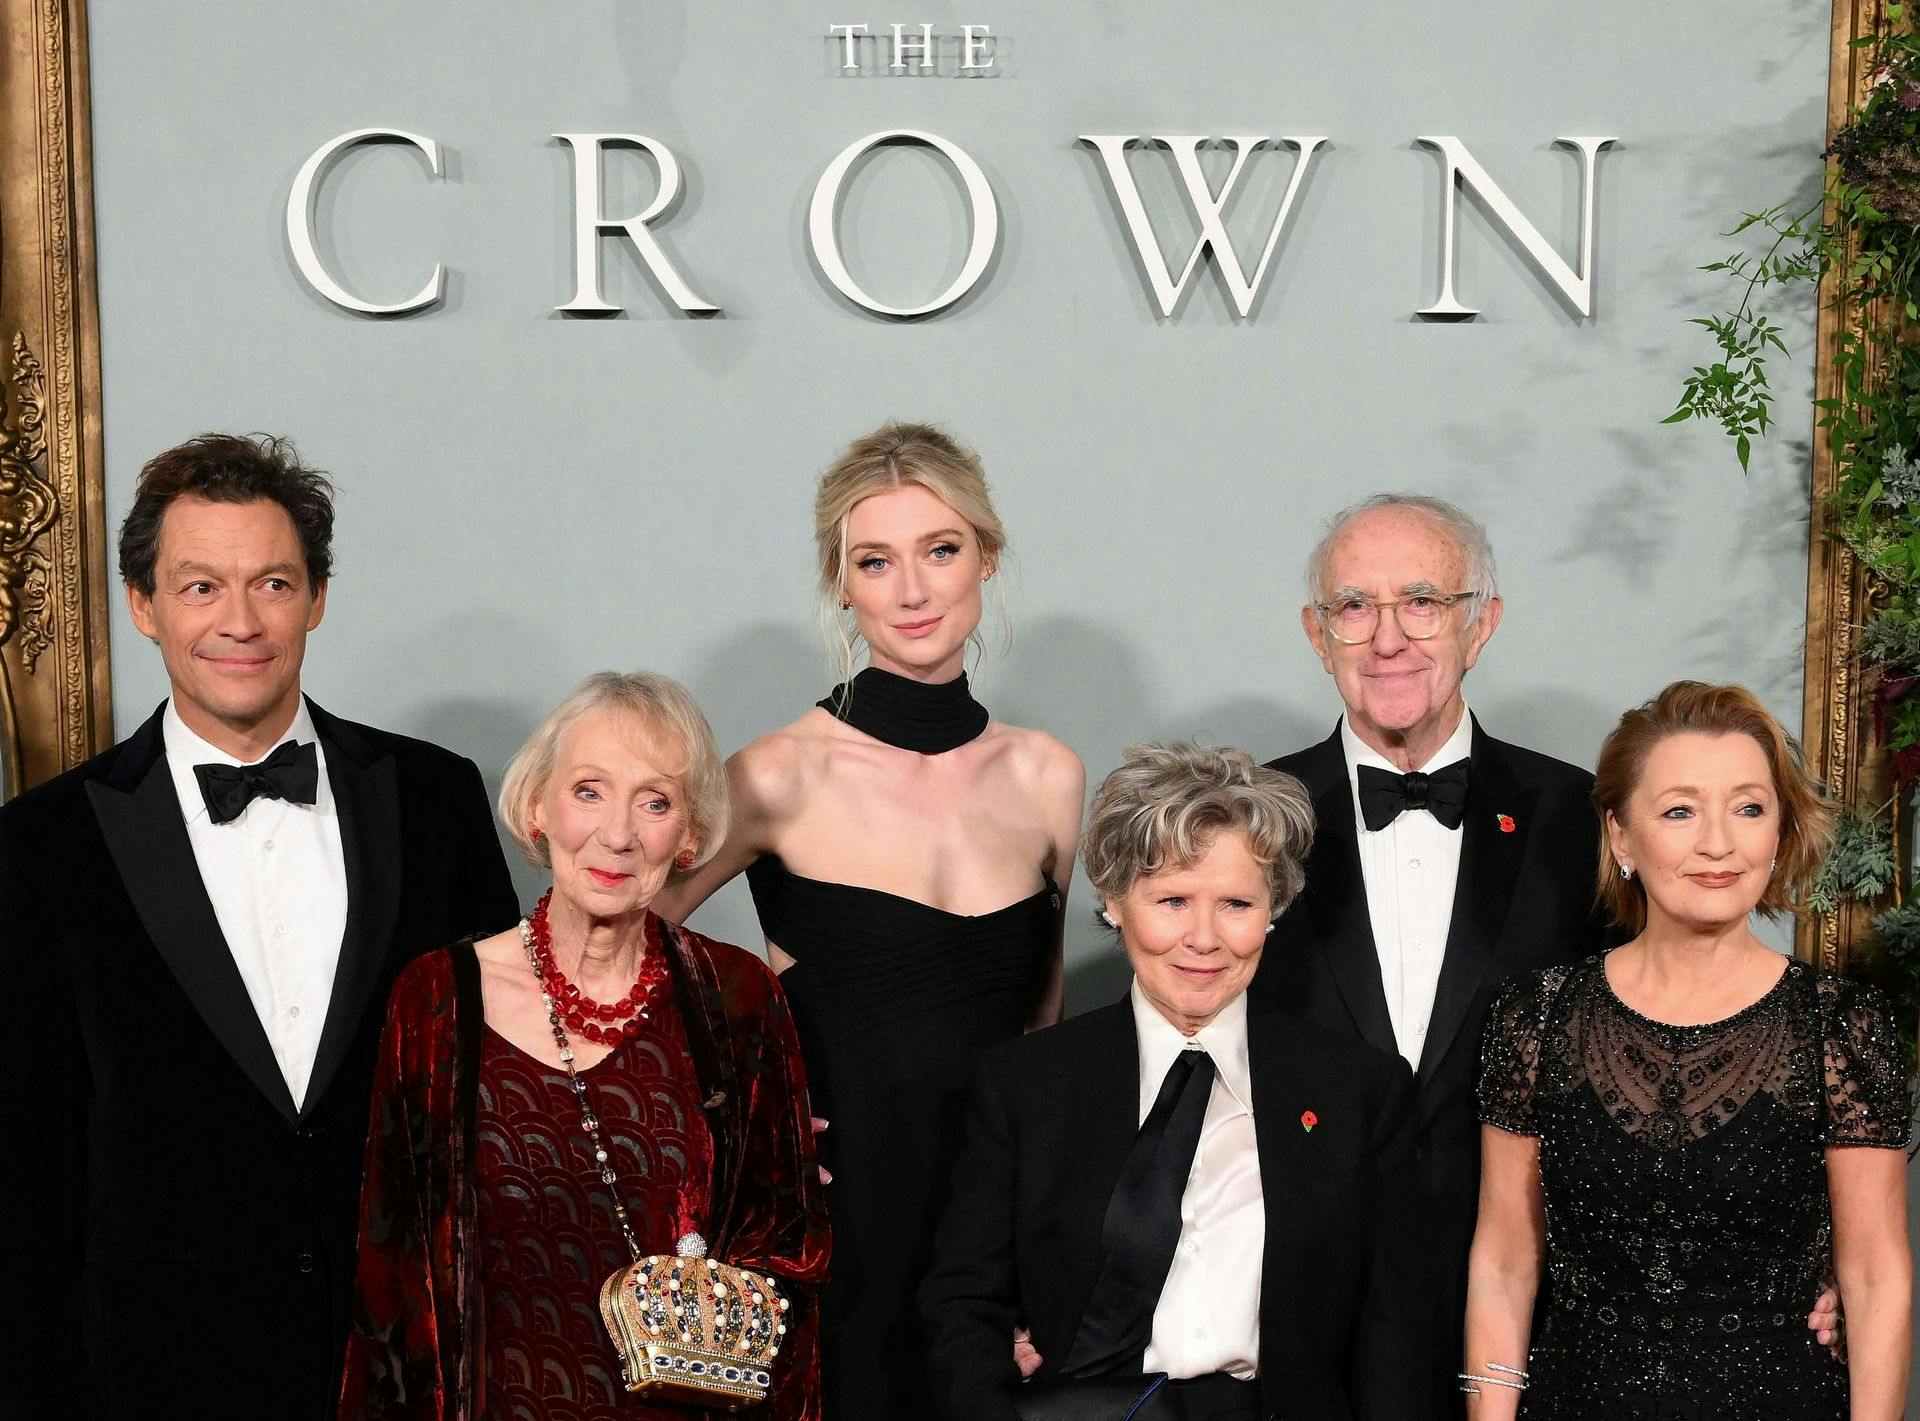 Skuespillerne i "The Crown" er flere gange blevet hædret og hyldet for deres portræt af den britiske kongefamilie. Men den serie skal dronning Margrethe ikke nyde noget af, siger hun nu.